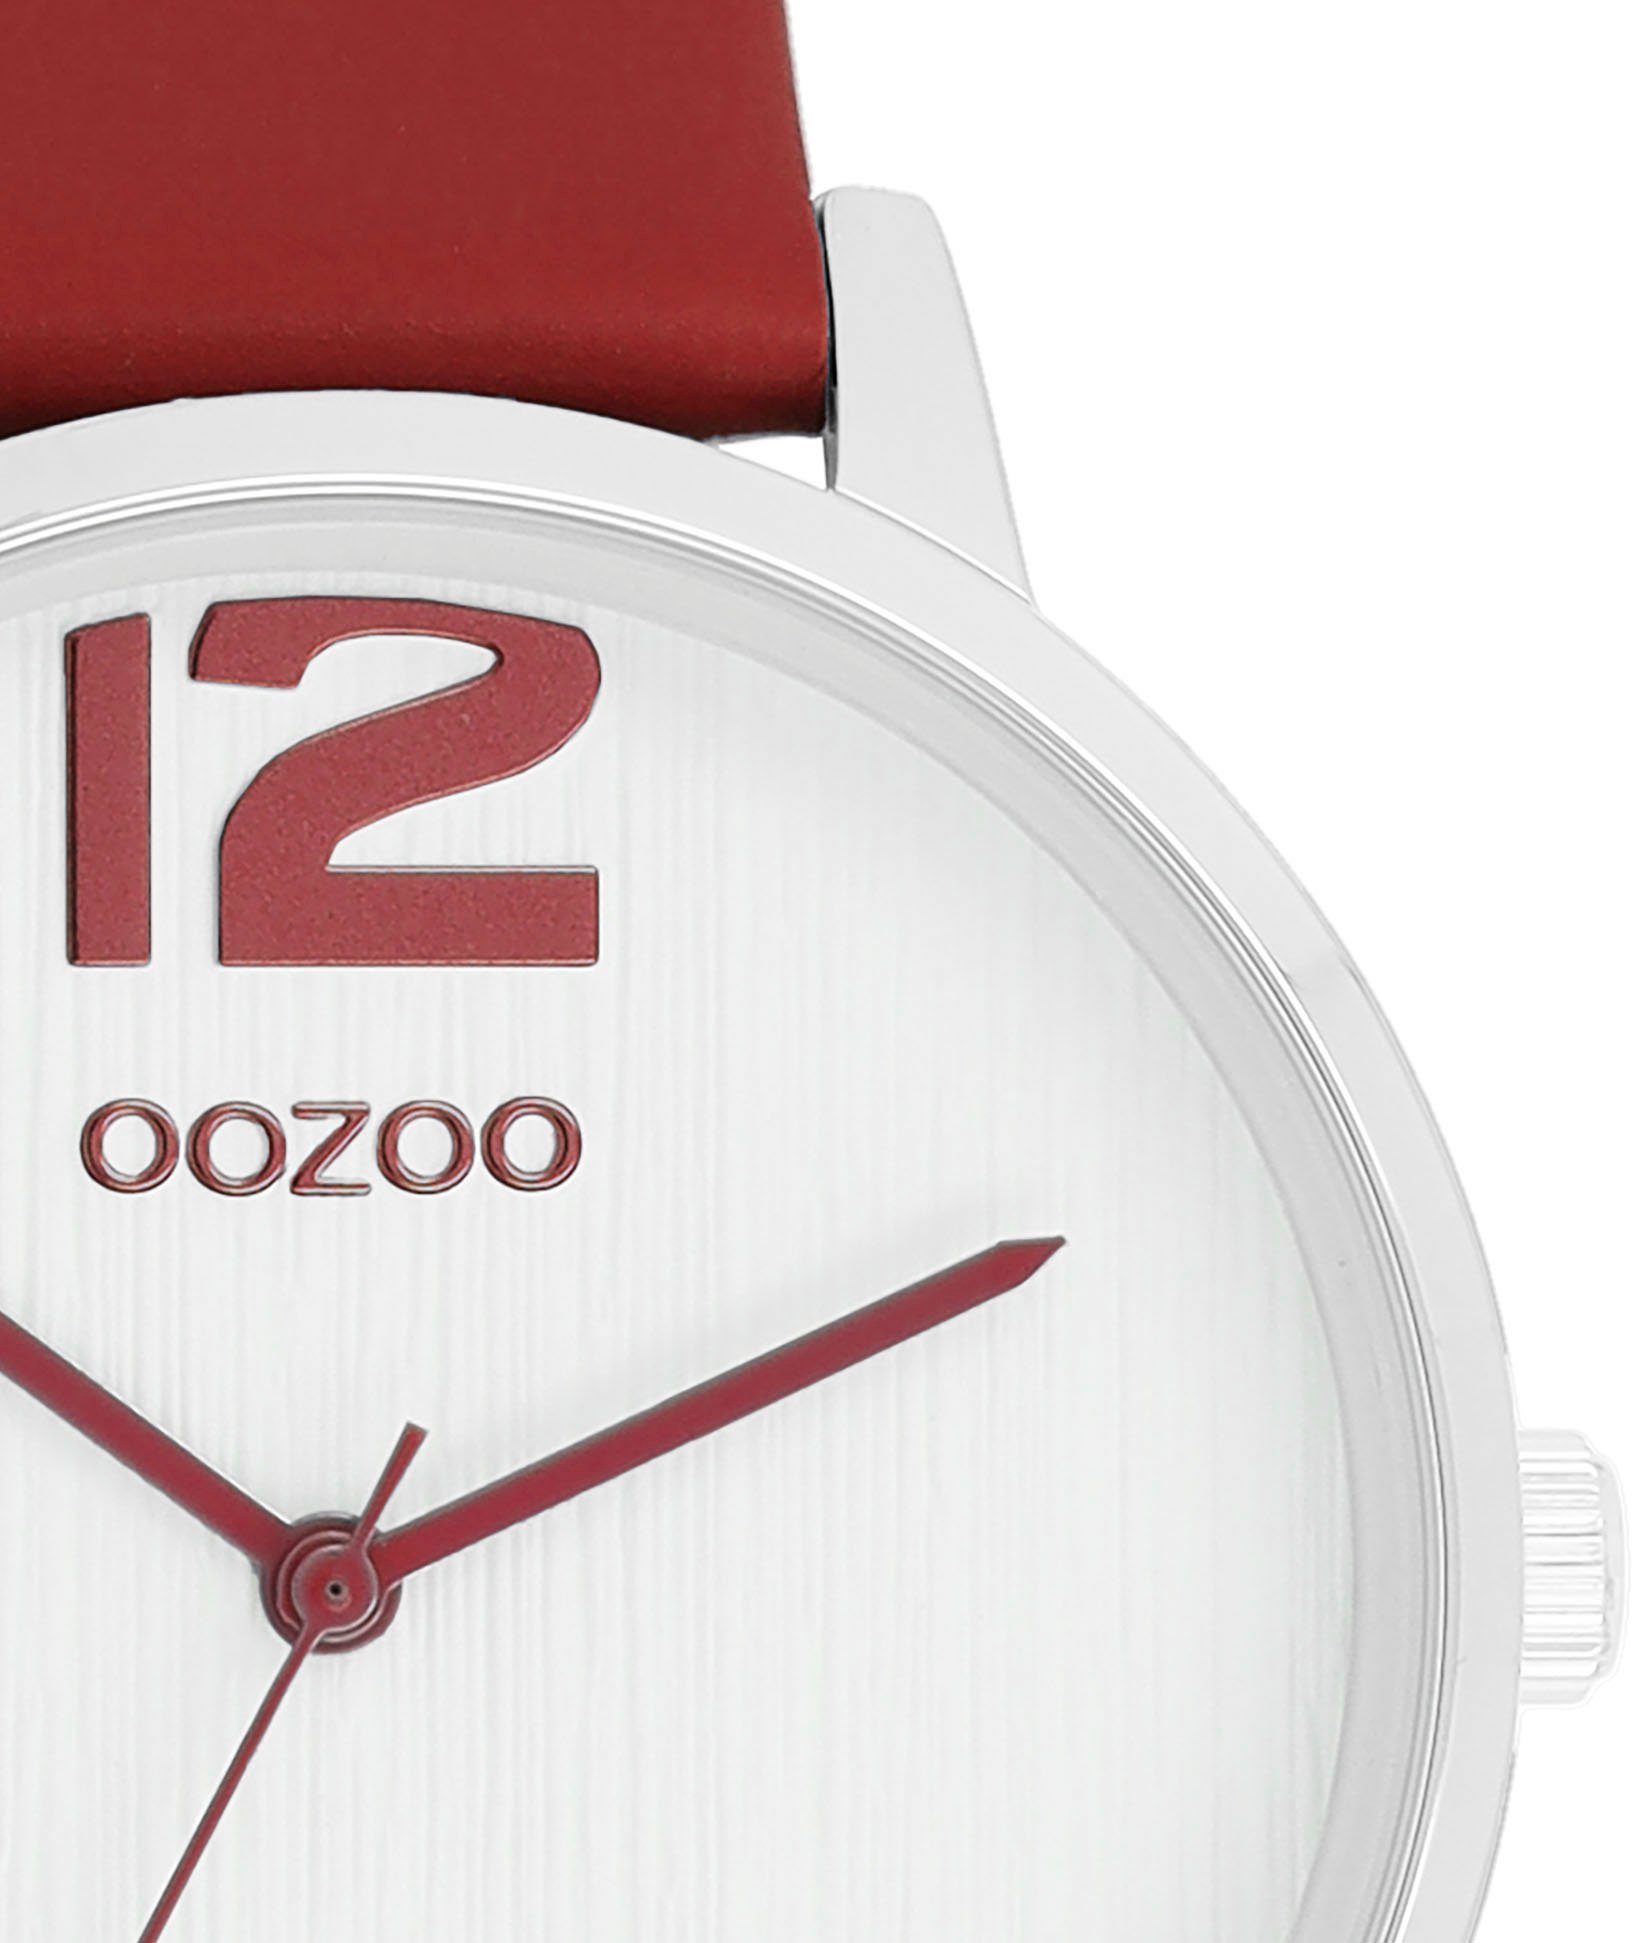 OOZOO Quarzuhr C11237